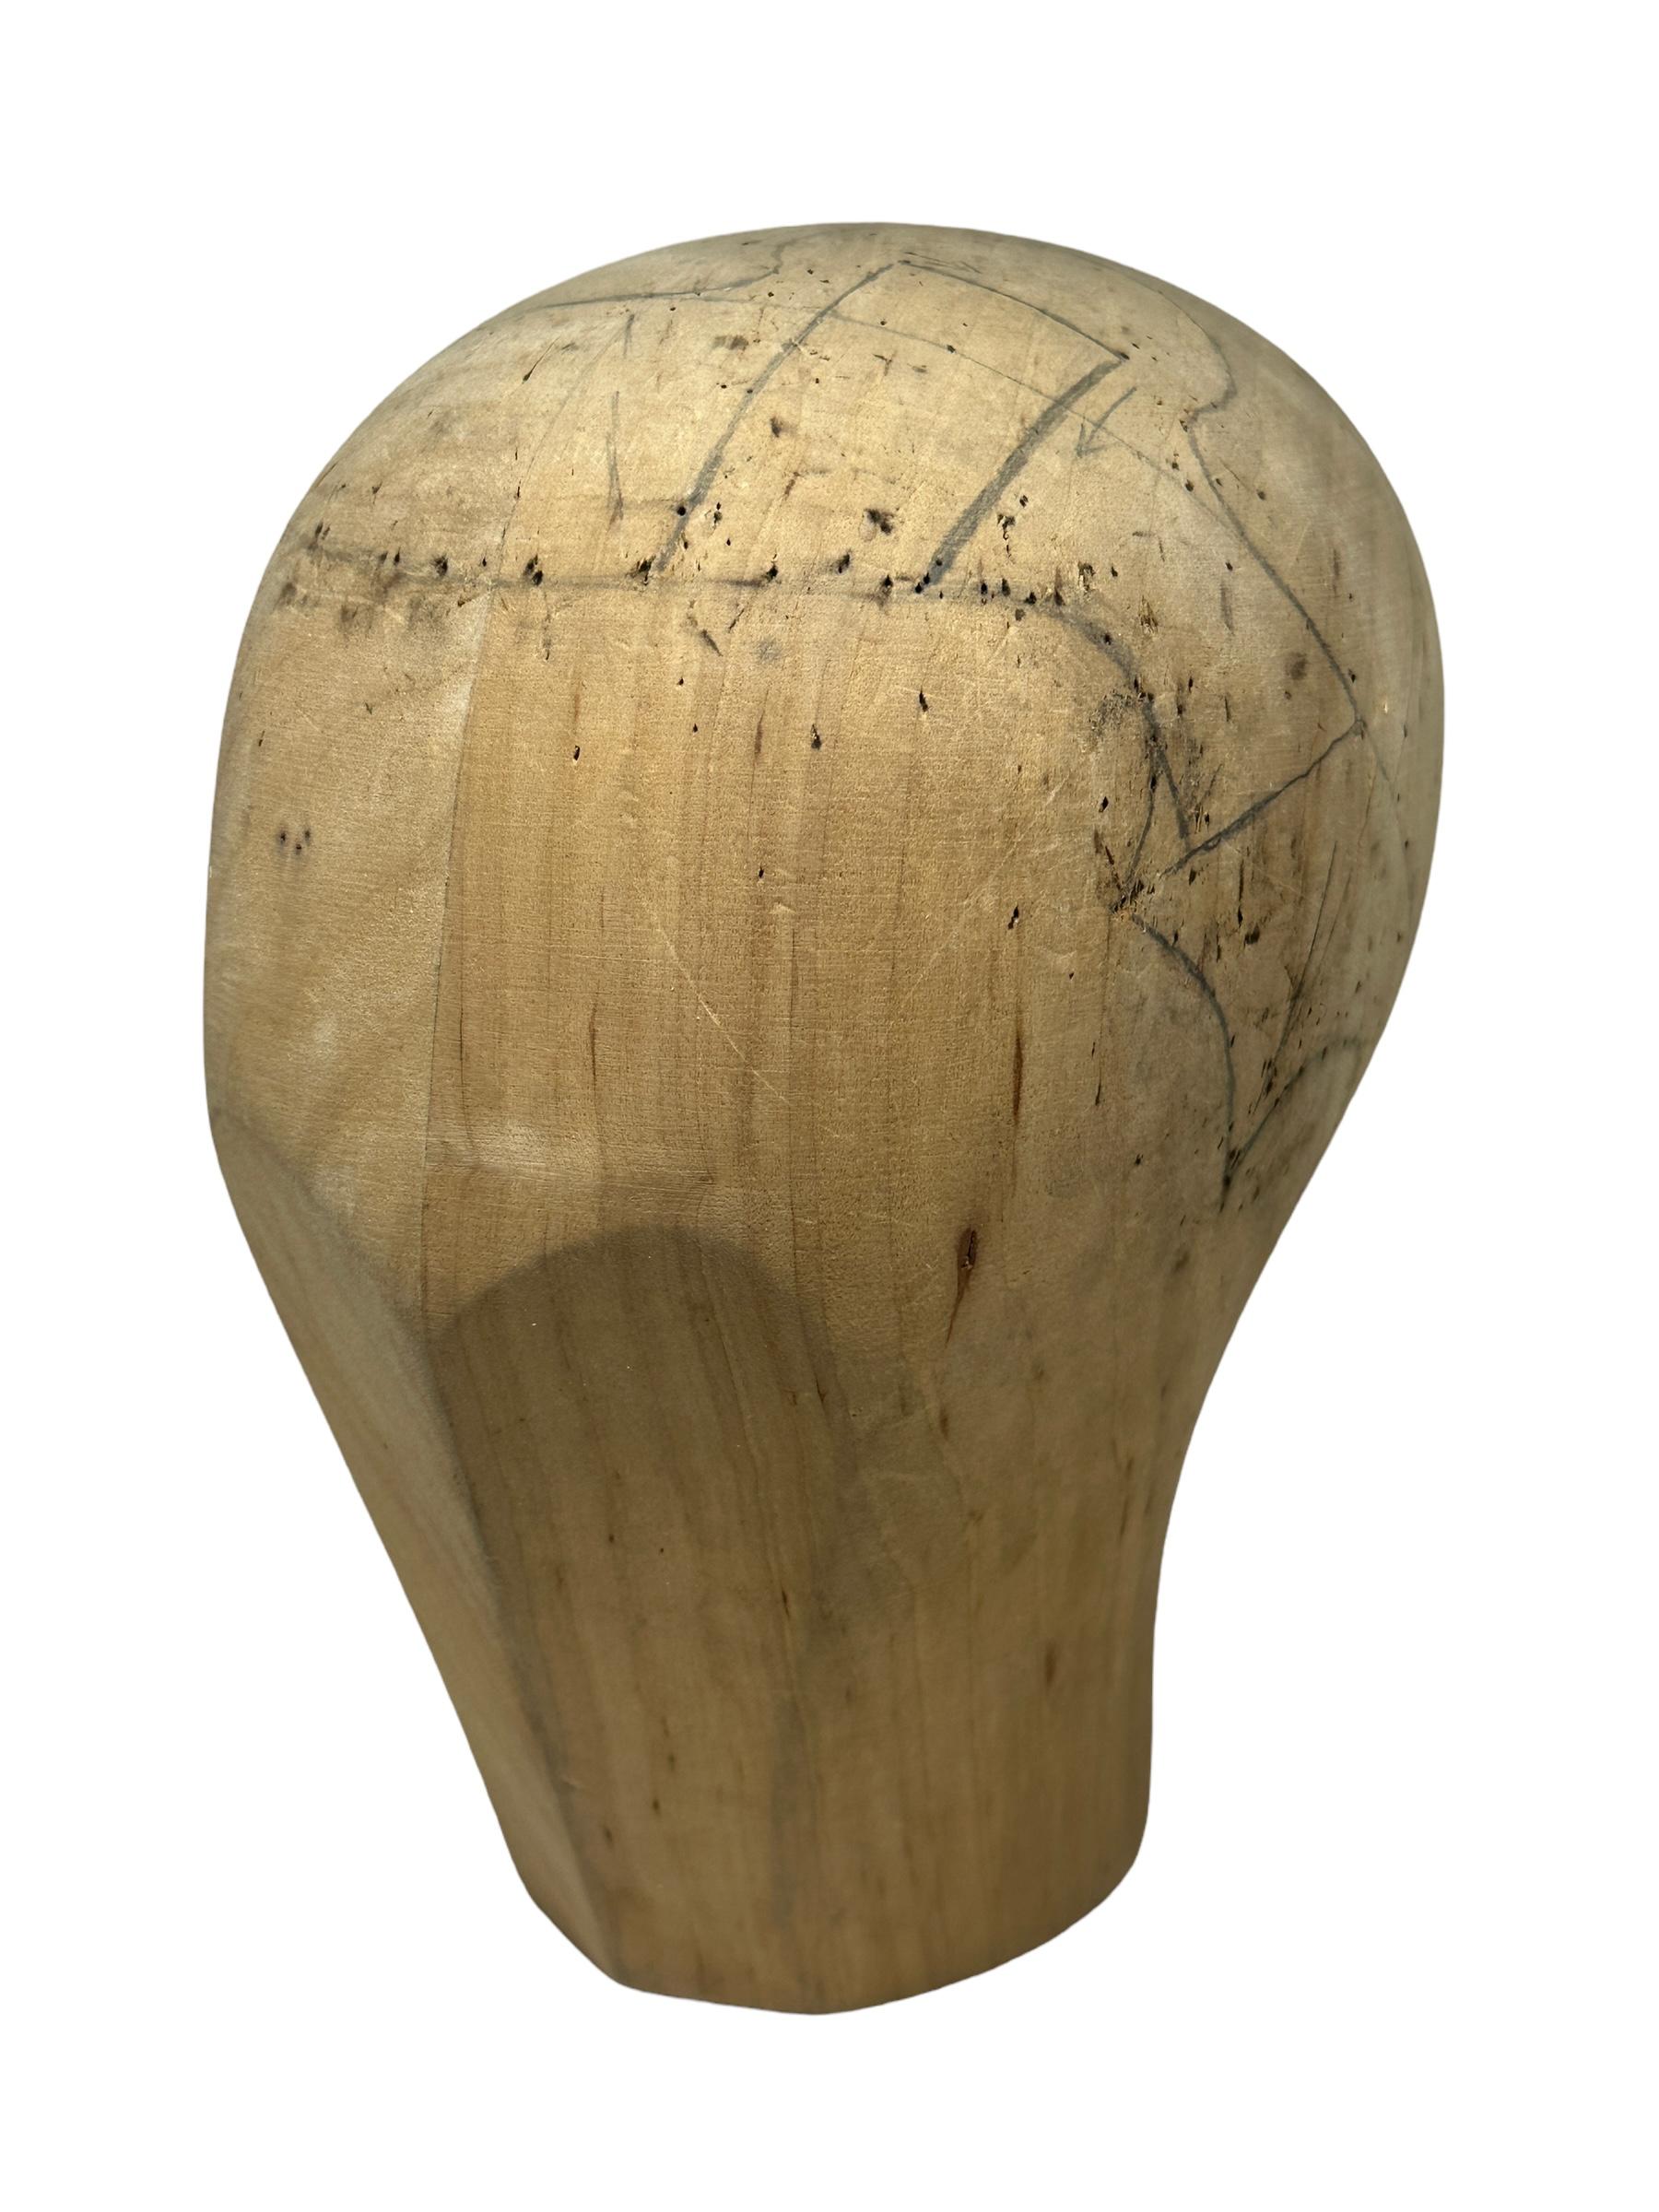 Adorable tête unique sculptée en bois. Autriche, années 1920 ou plus anciennes. Objet de décoration idéal, utilisé dans la présentation et la fabrication de chapeaux. Sculptée à la main dans du bois. Belle pièce d'exposition dans n'importe quelle